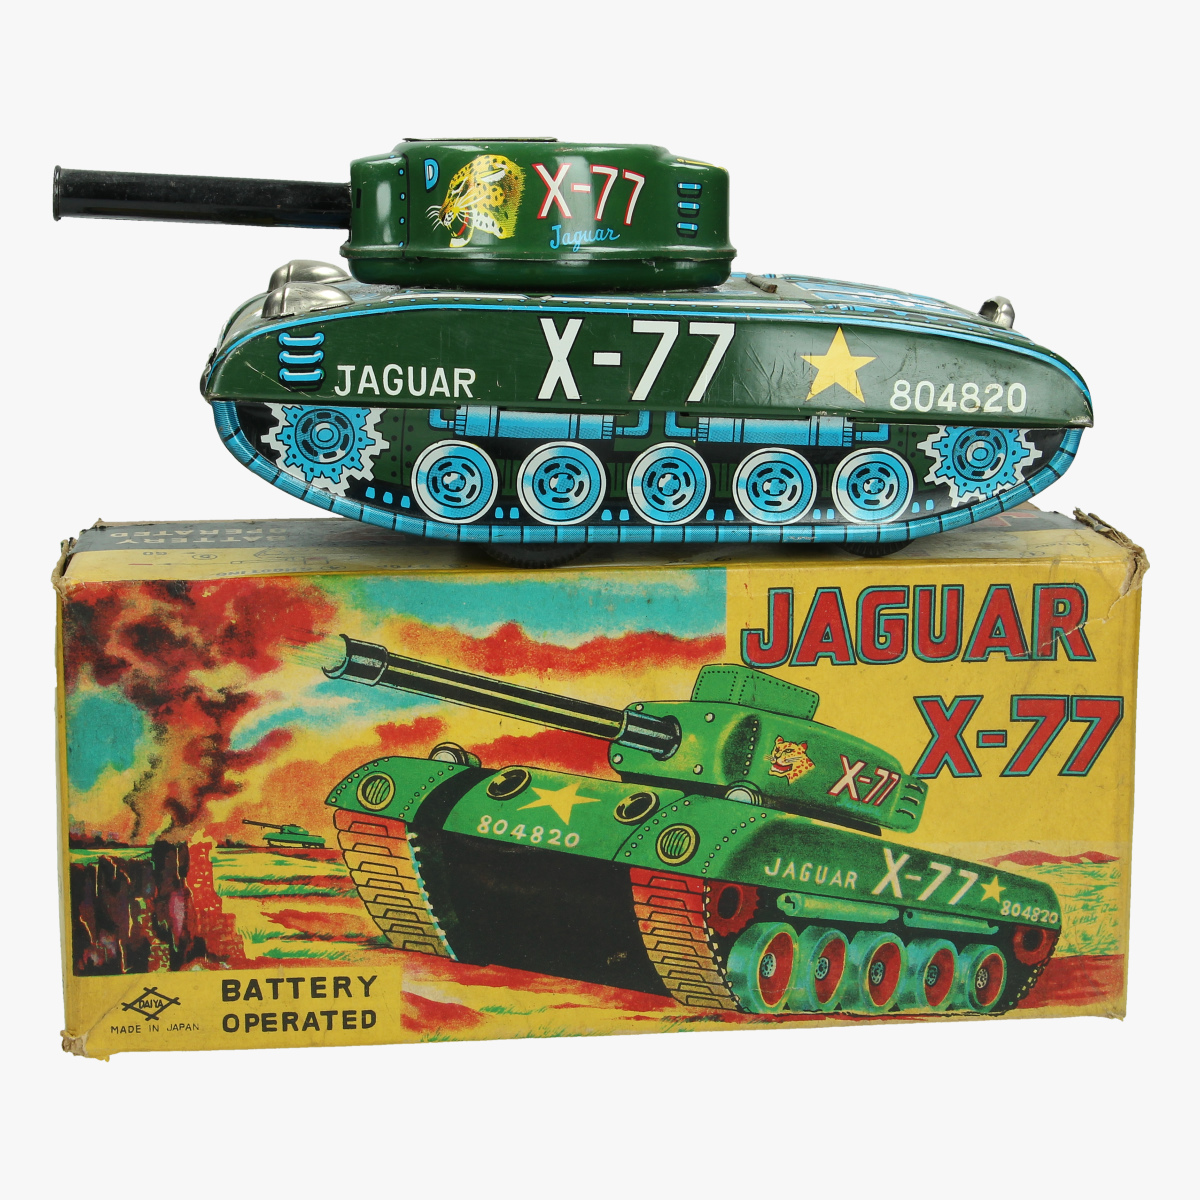 Afbeeldingen van blikken tank jaguar x-77 made in japan battery operated